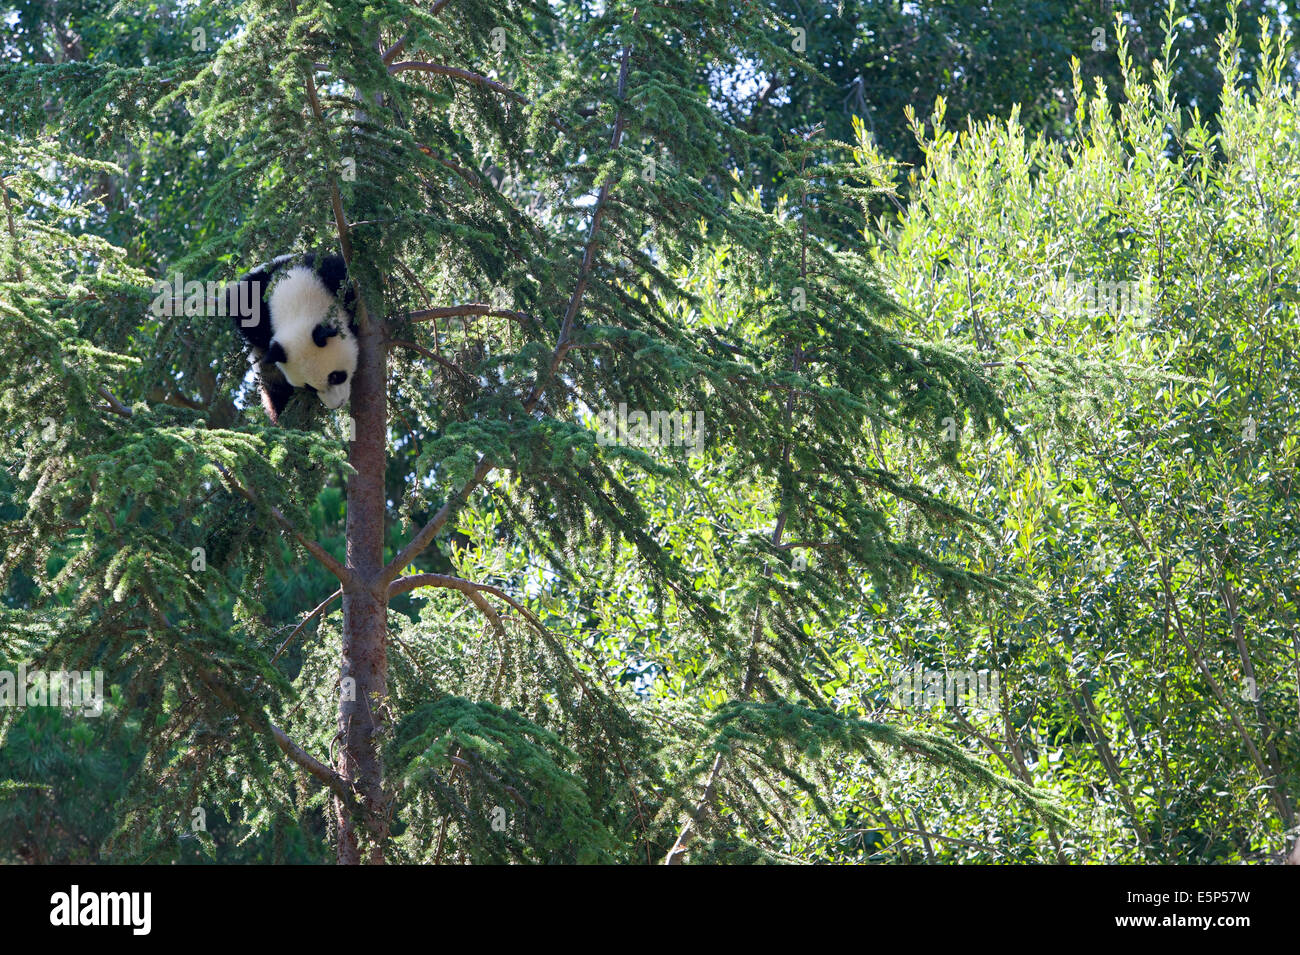 A 1 ans, Grand Panda cub, appelée Xing Bao, grimpe à plus de 10 mètres de haut dans un arbre, puis se bloque facilement à l'envers. Banque D'Images